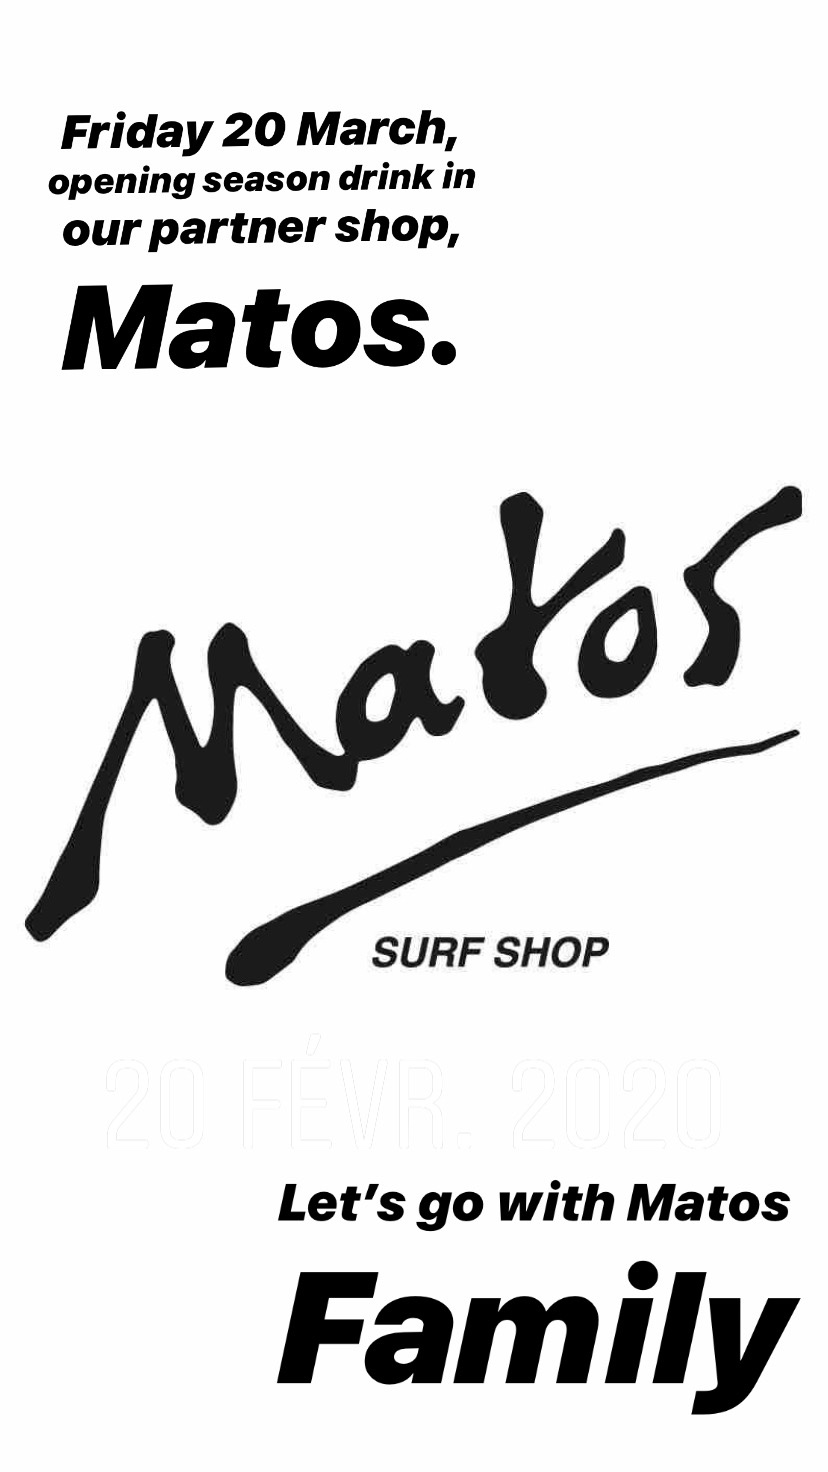 Matos shop – season Opening